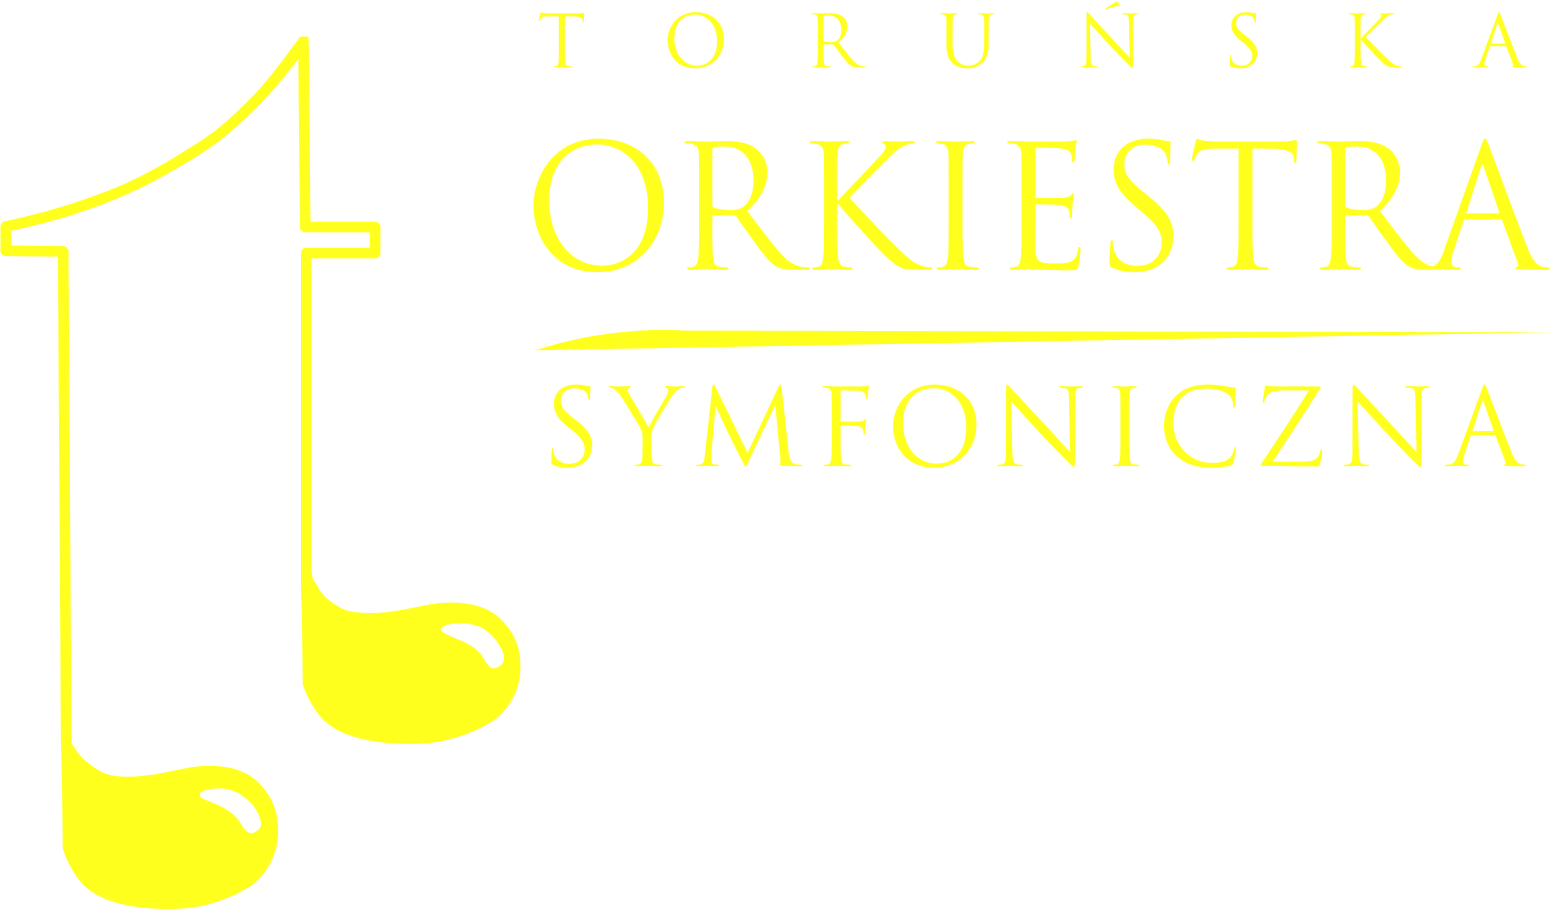 Toruńska Orkiestra Symfoniczna